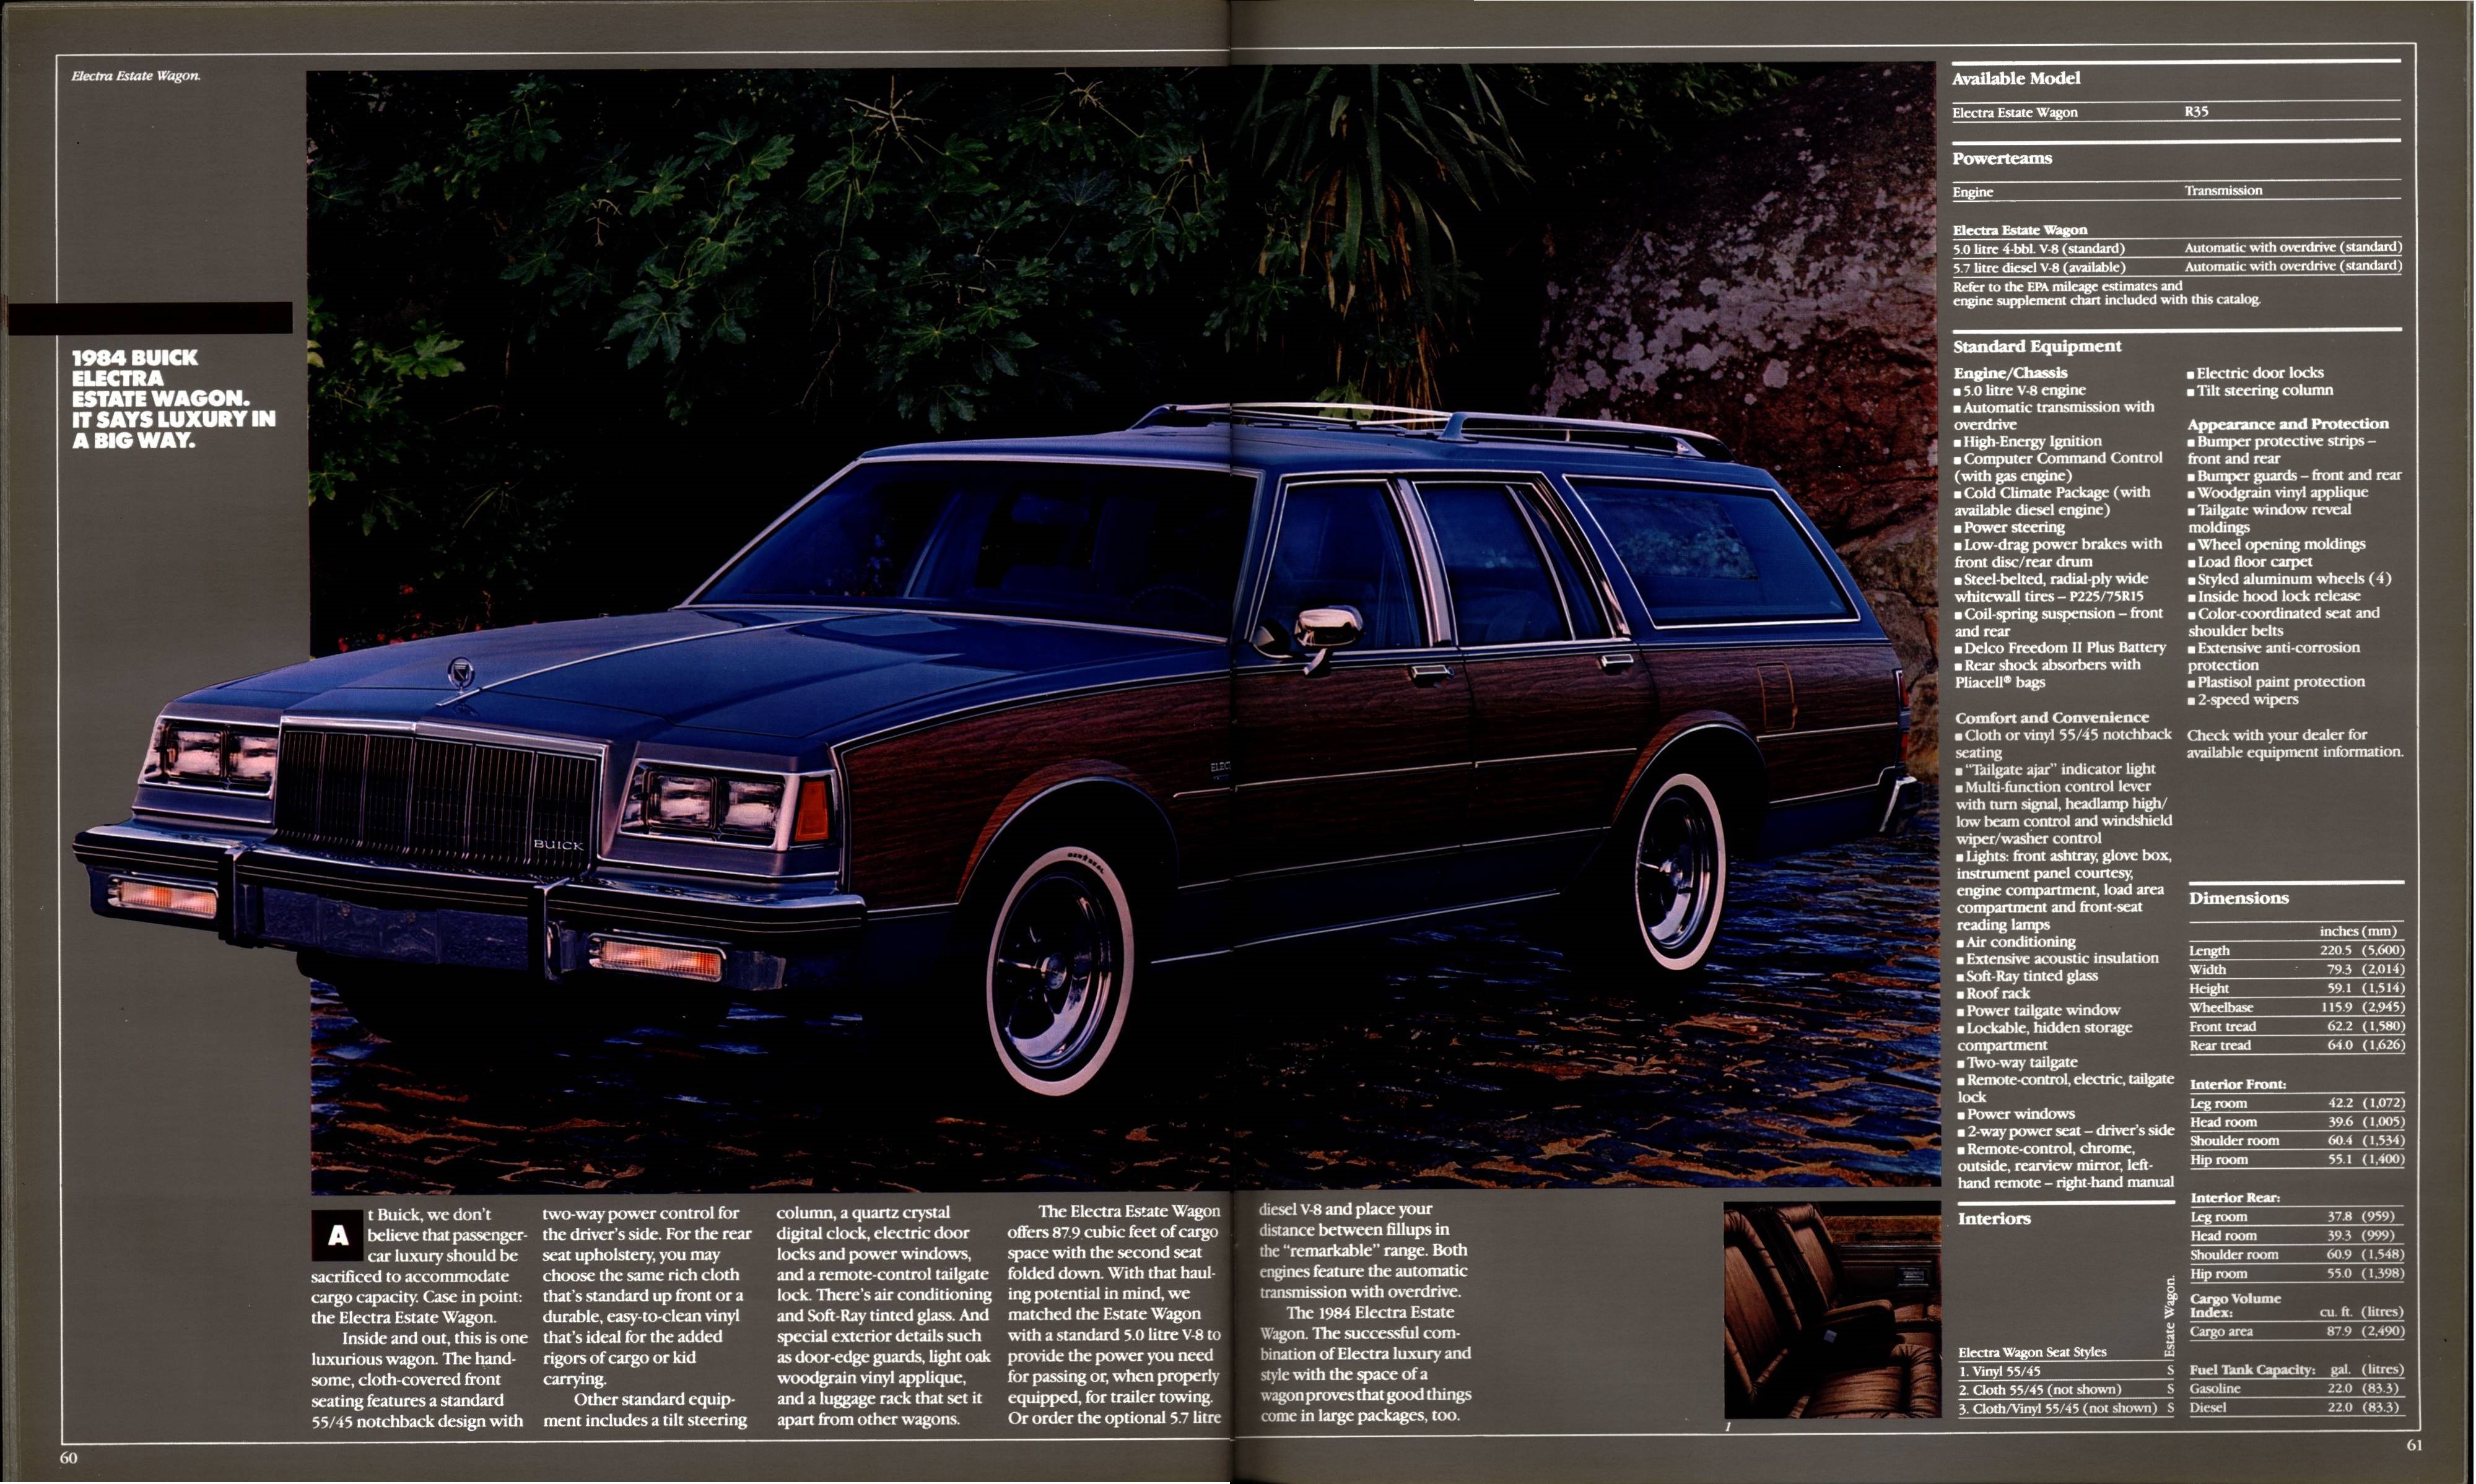 1984 Buick Full Line Prestige 60-61